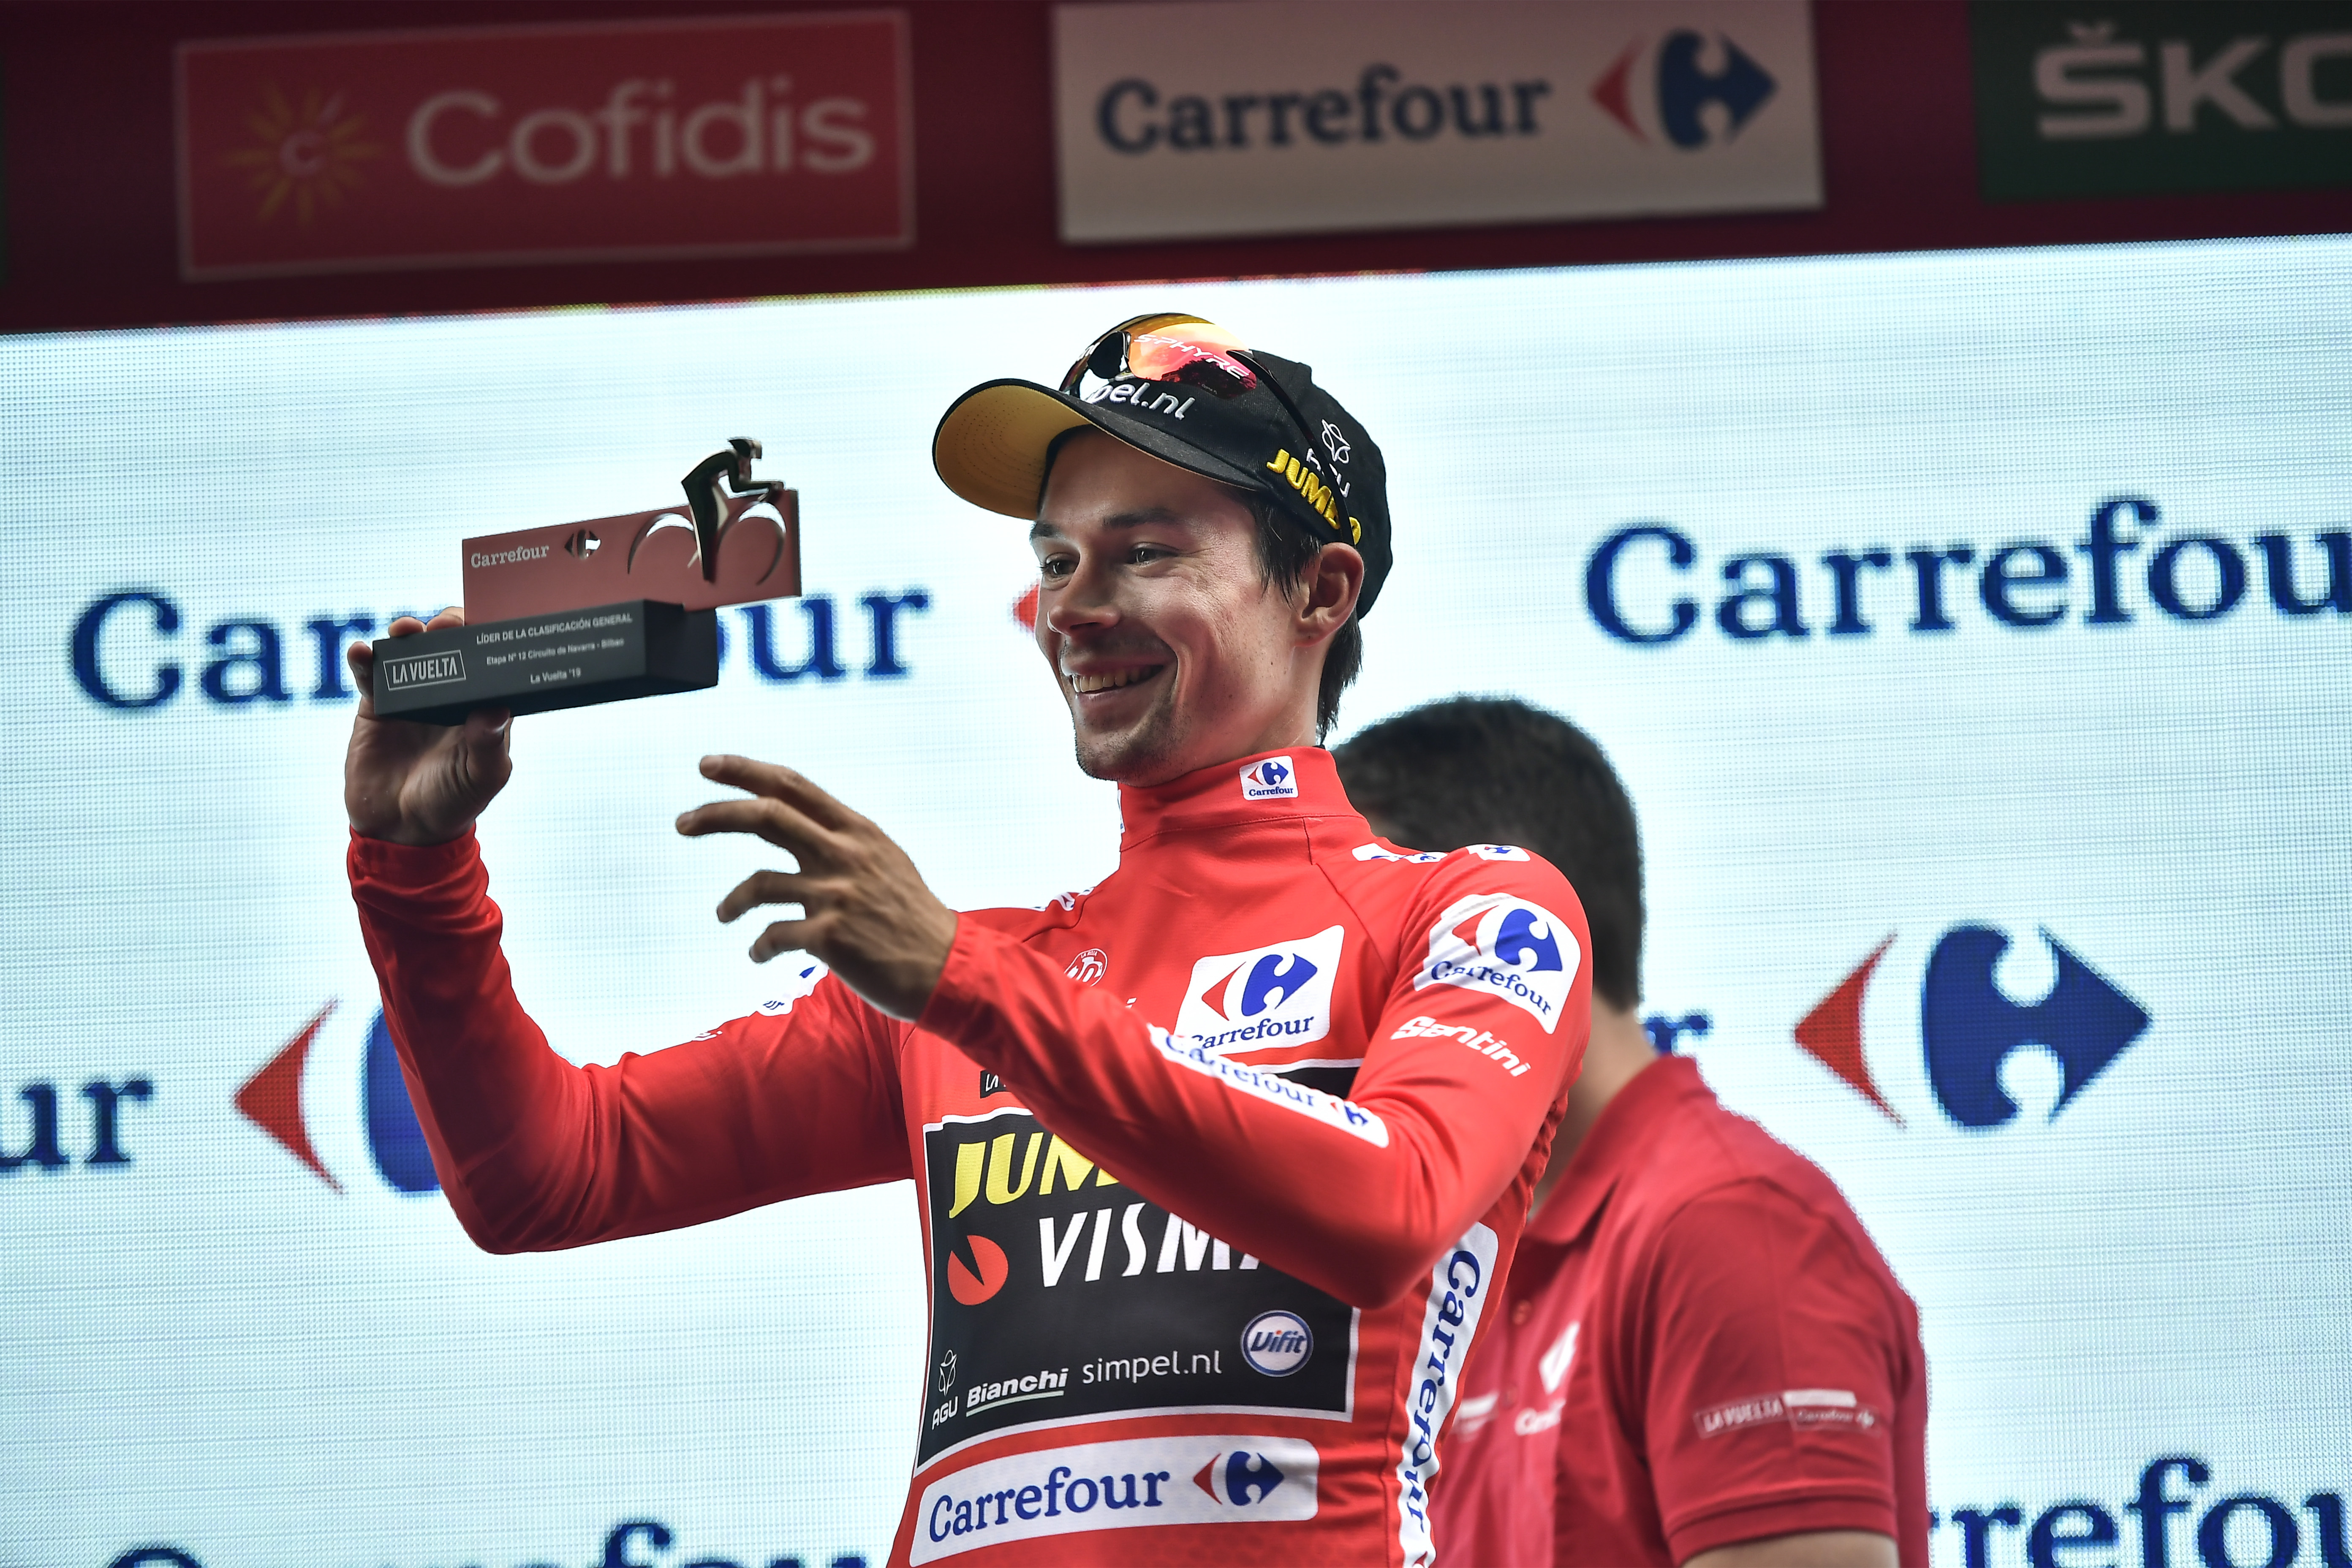 Slovinský cyklista Primož Roglič z tímu Jumbo-Visma pózuje v červenom drese lídra priebežnej klasifikácie pretekov La Vuelta a Espaňa